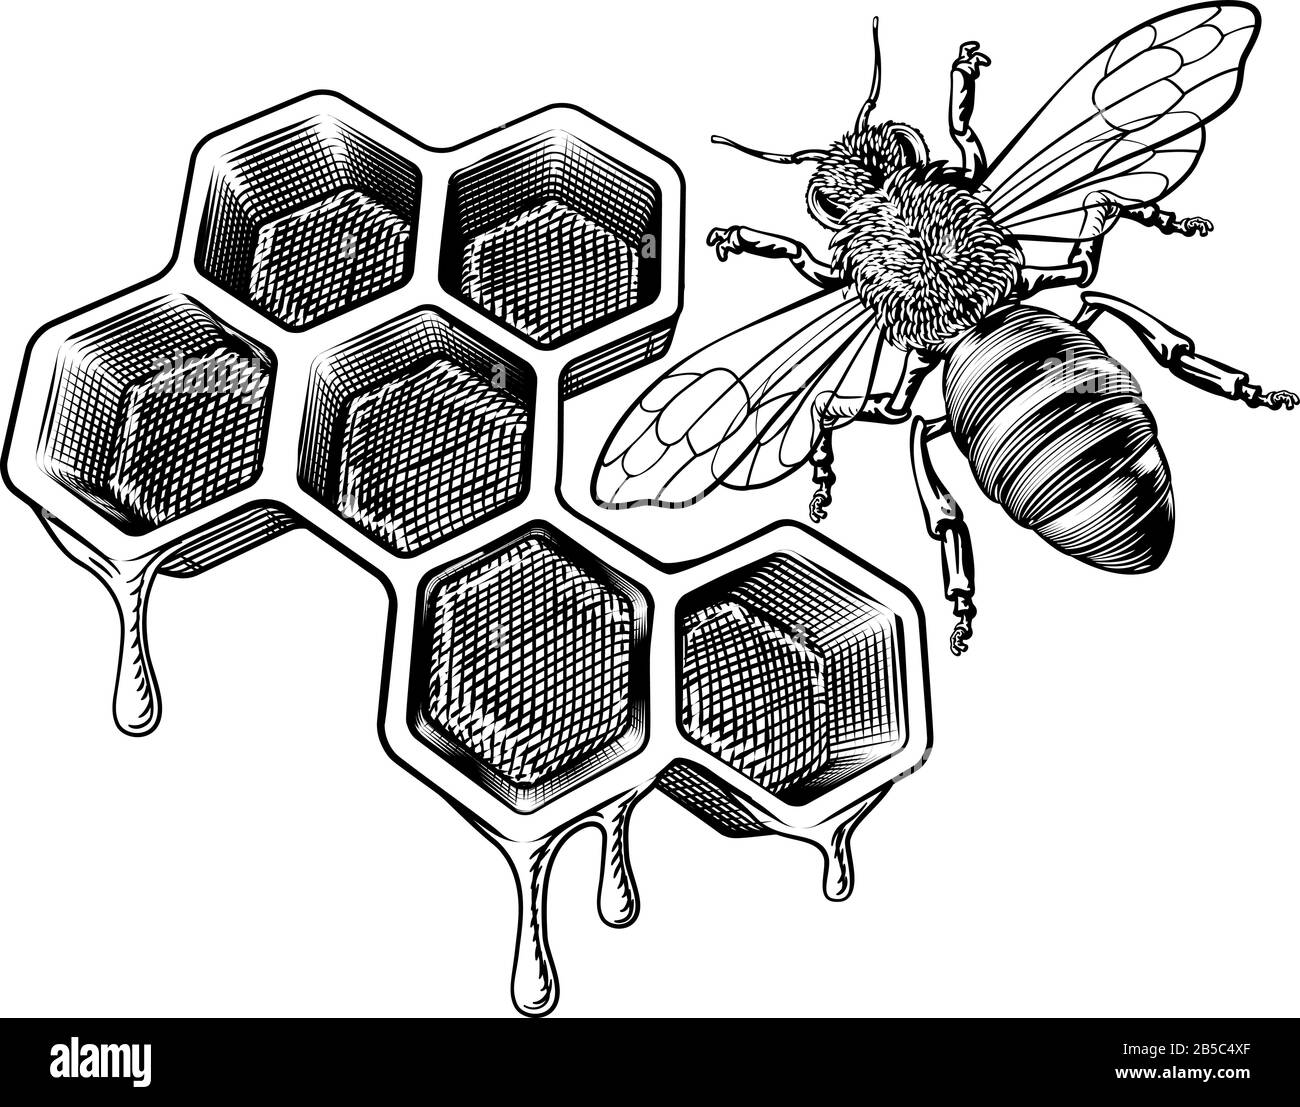 Le miel d'abeilles et de bourdons Dessin Vintage Illustration de Vecteur